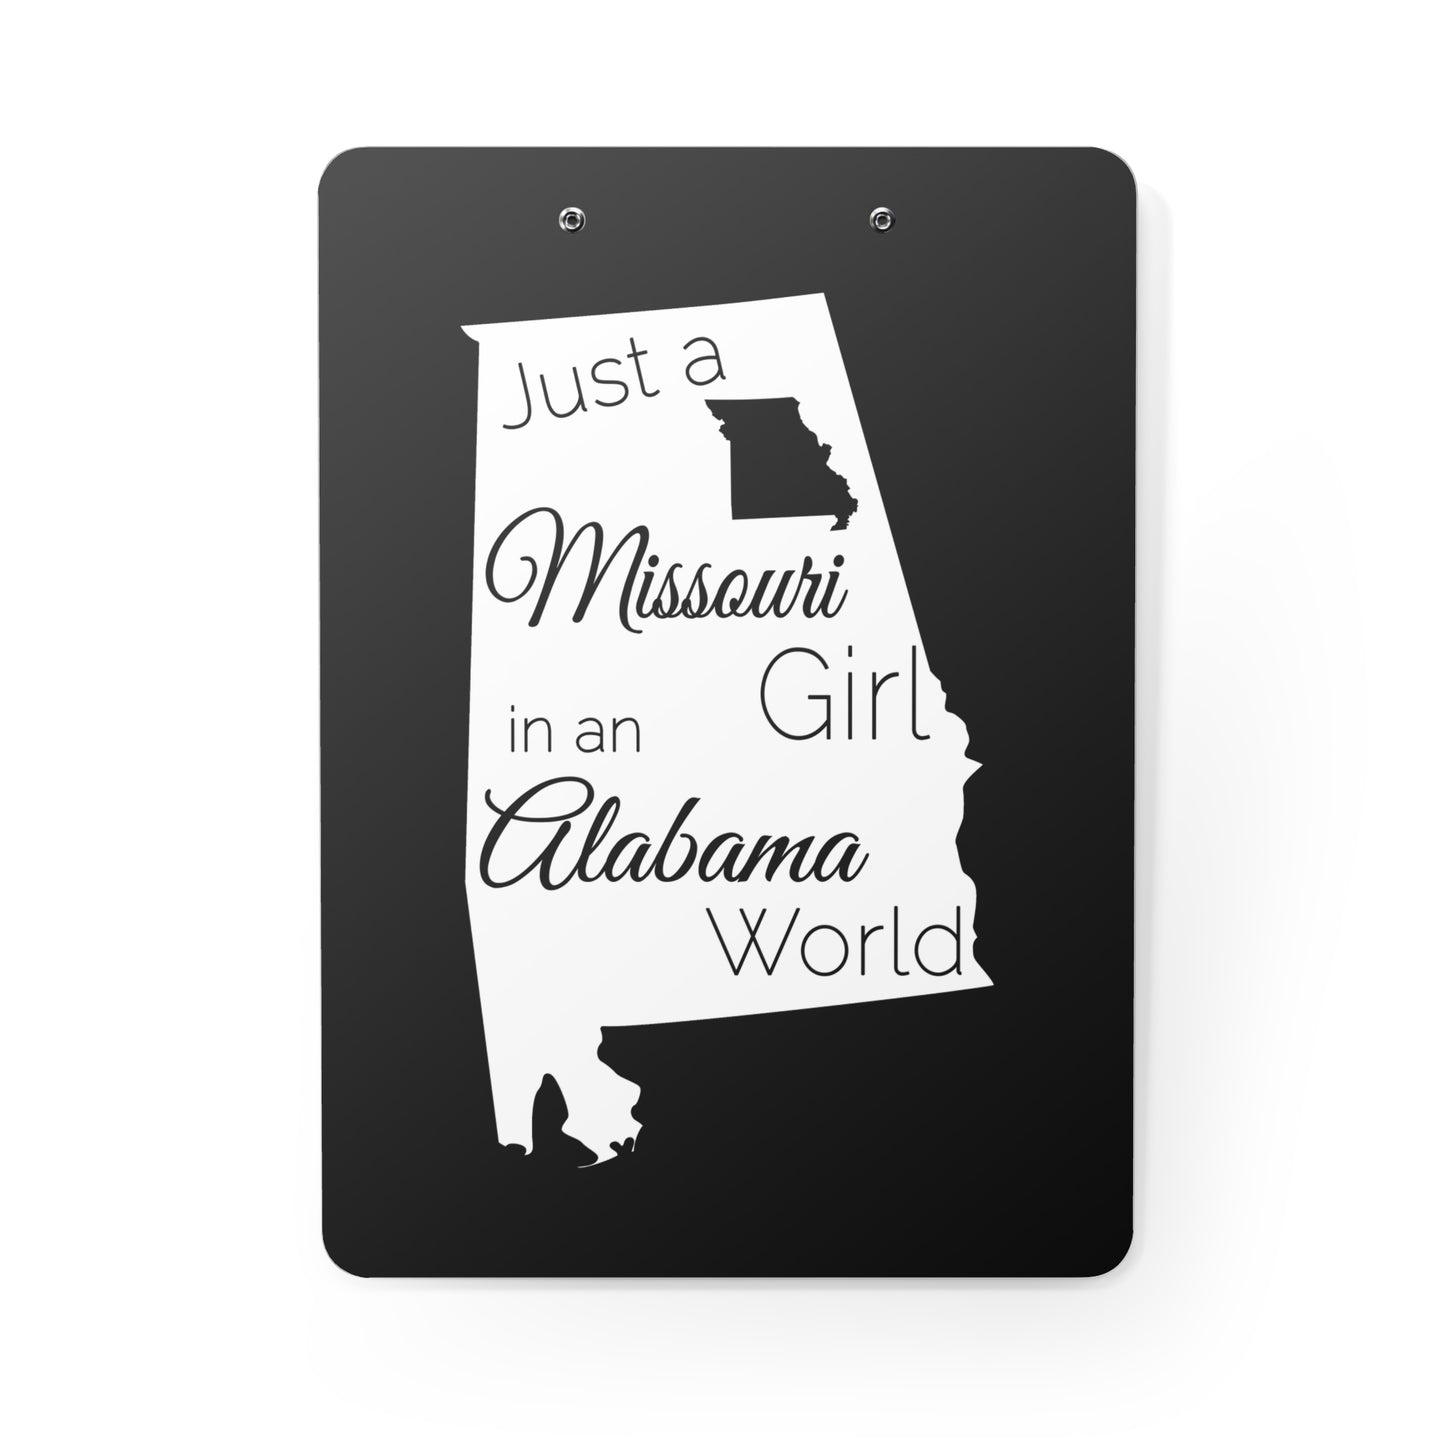 Just a Missouri Girl in an Alabama World Clipboard